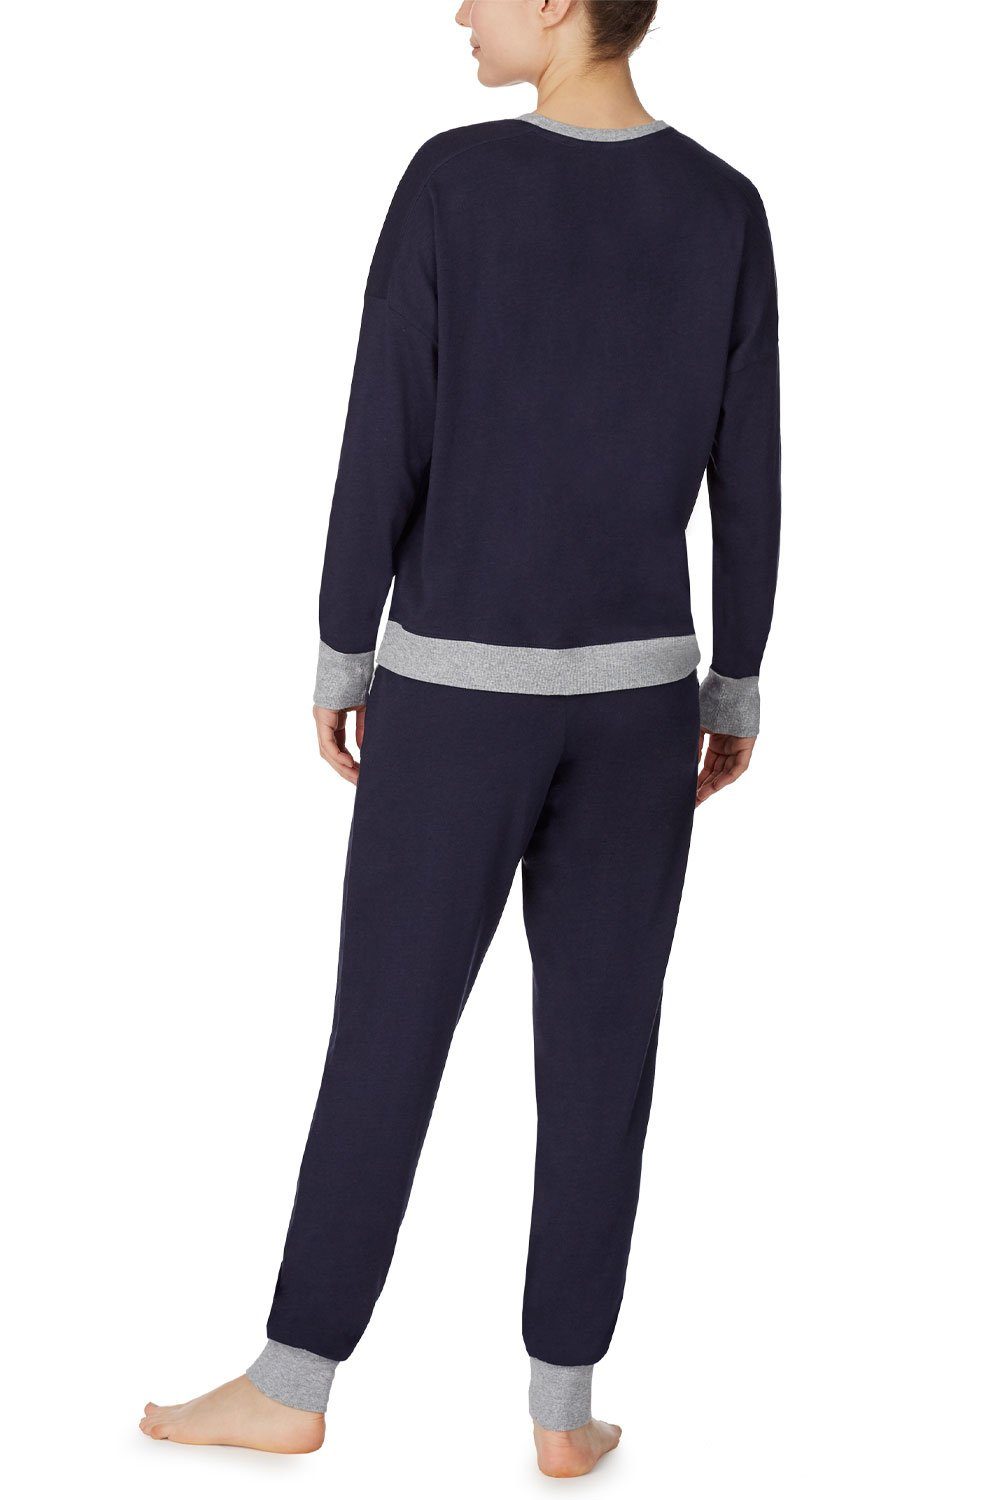 Pyjama navy DKNY Set & Top Jogger YI2919259